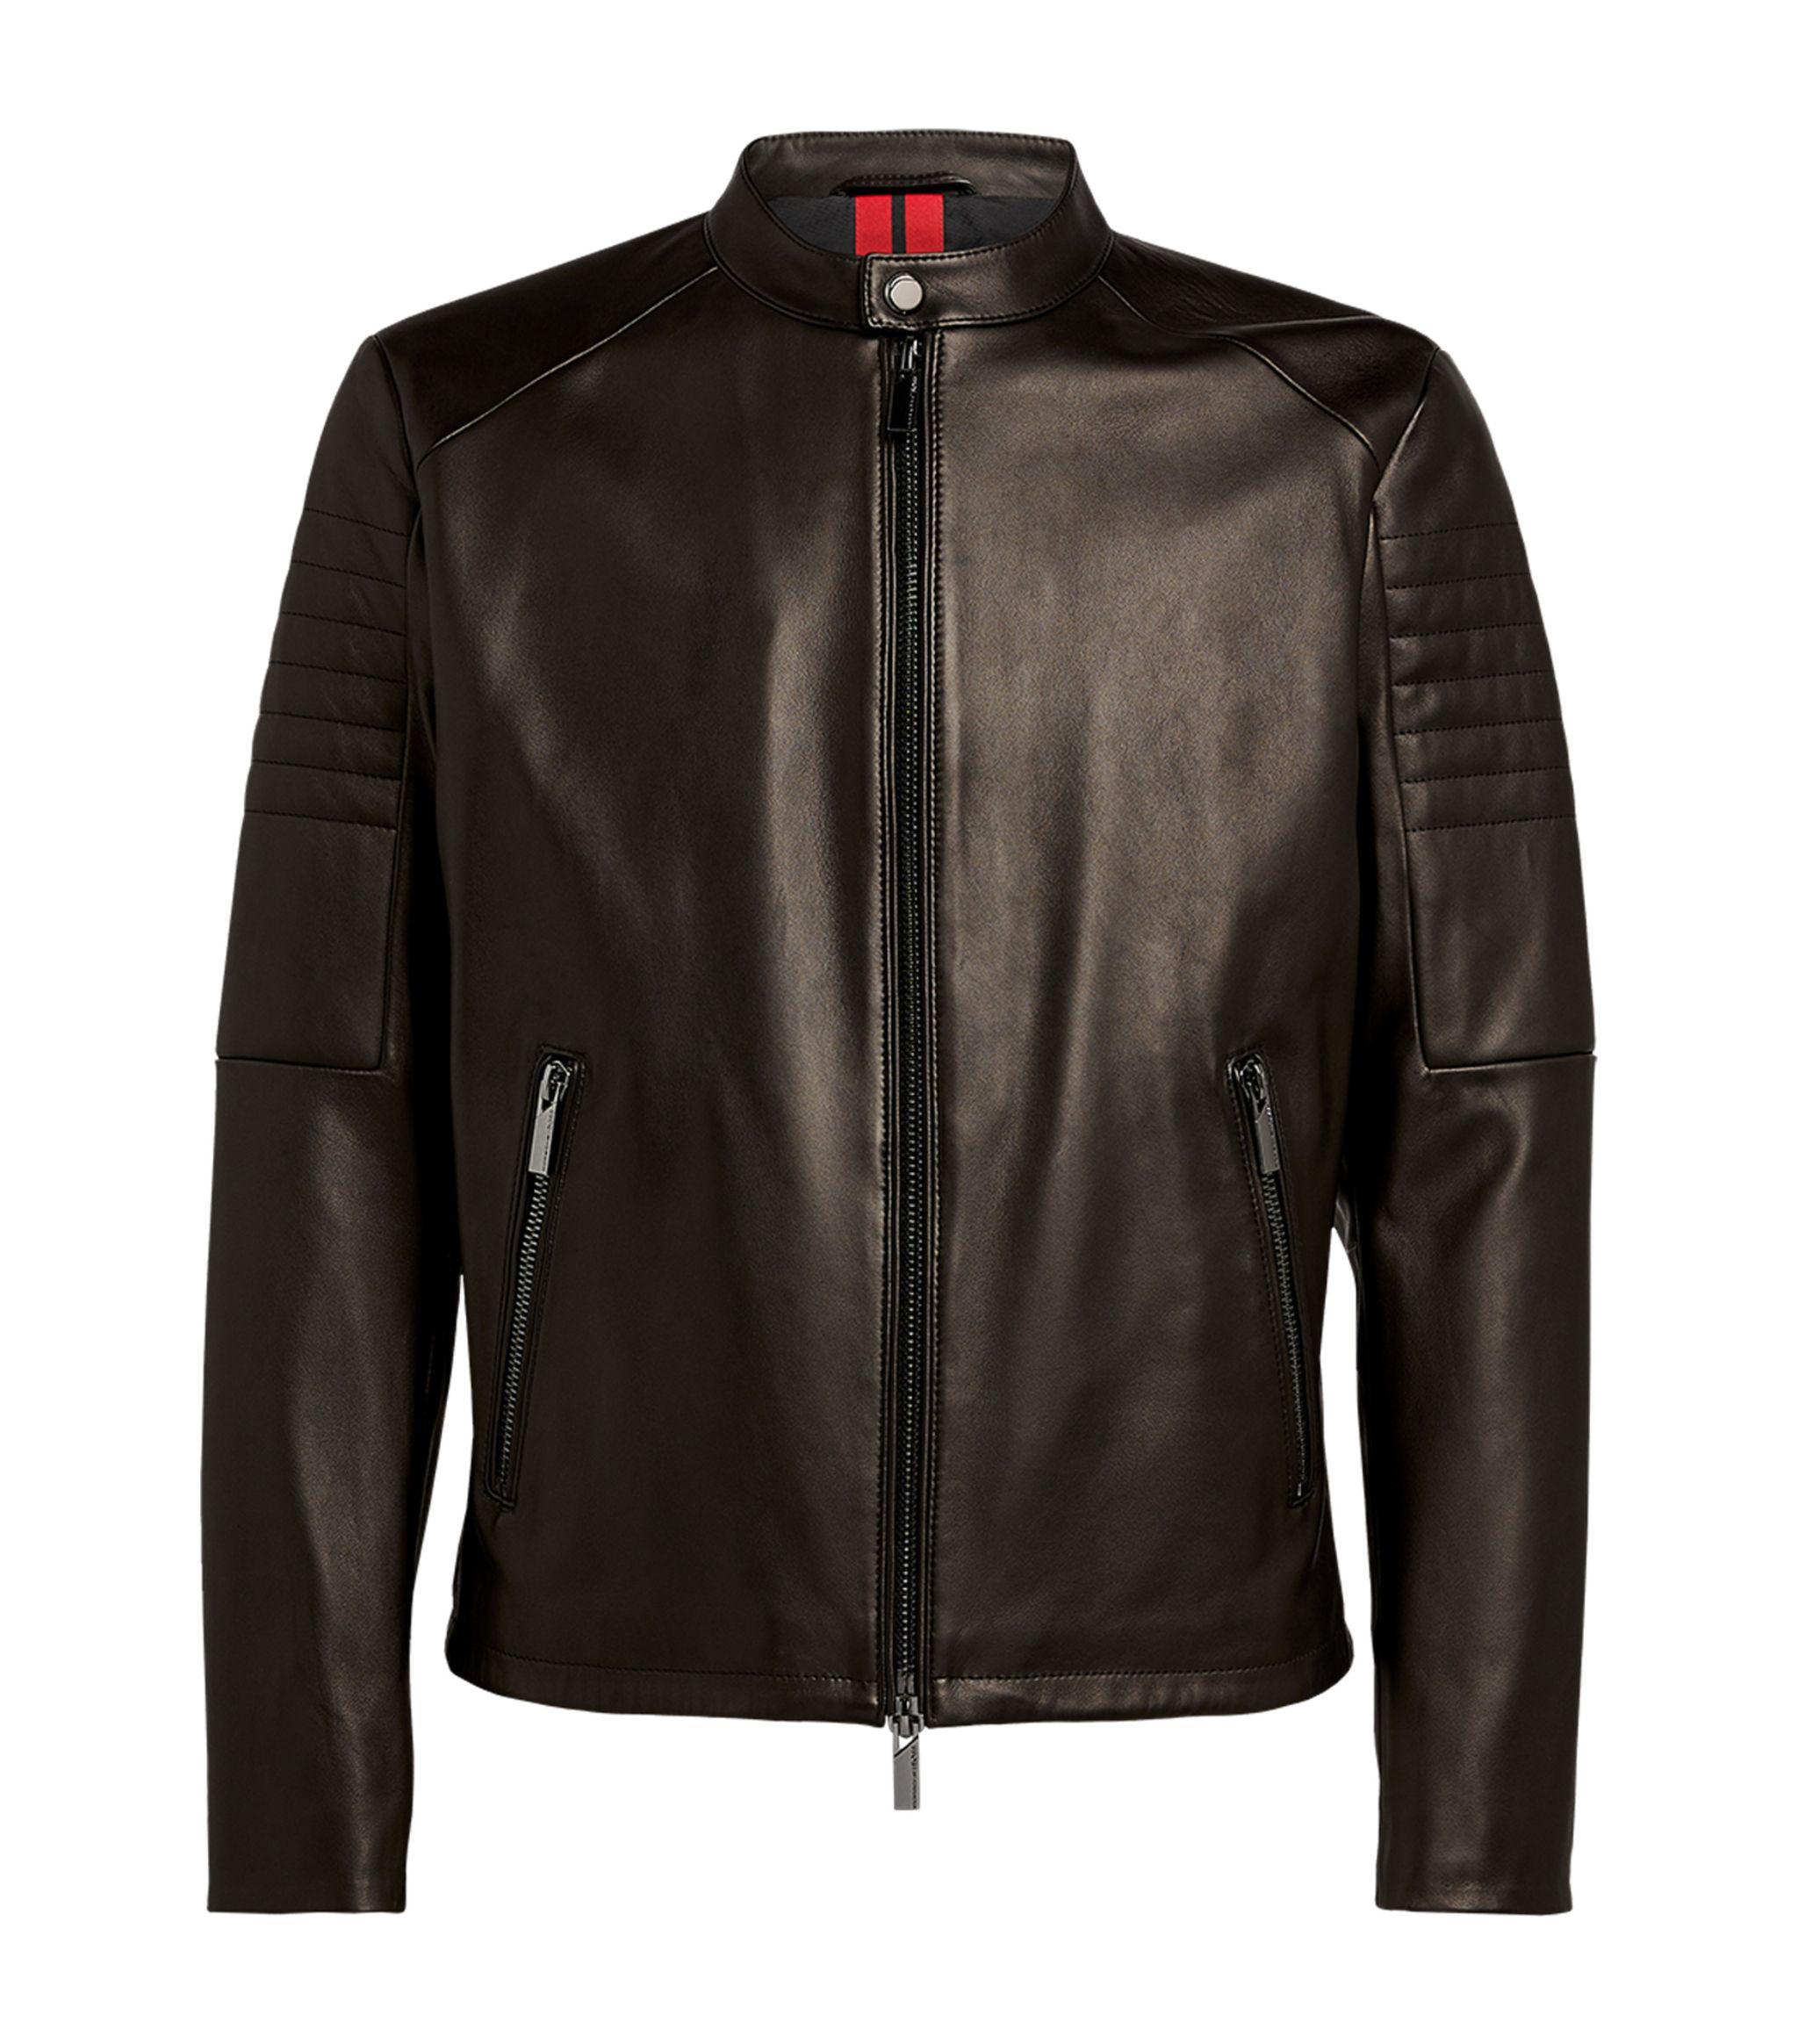 BOSS by HUGO BOSS + Porsche Leather Biker Jacket in Black for Men - Lyst